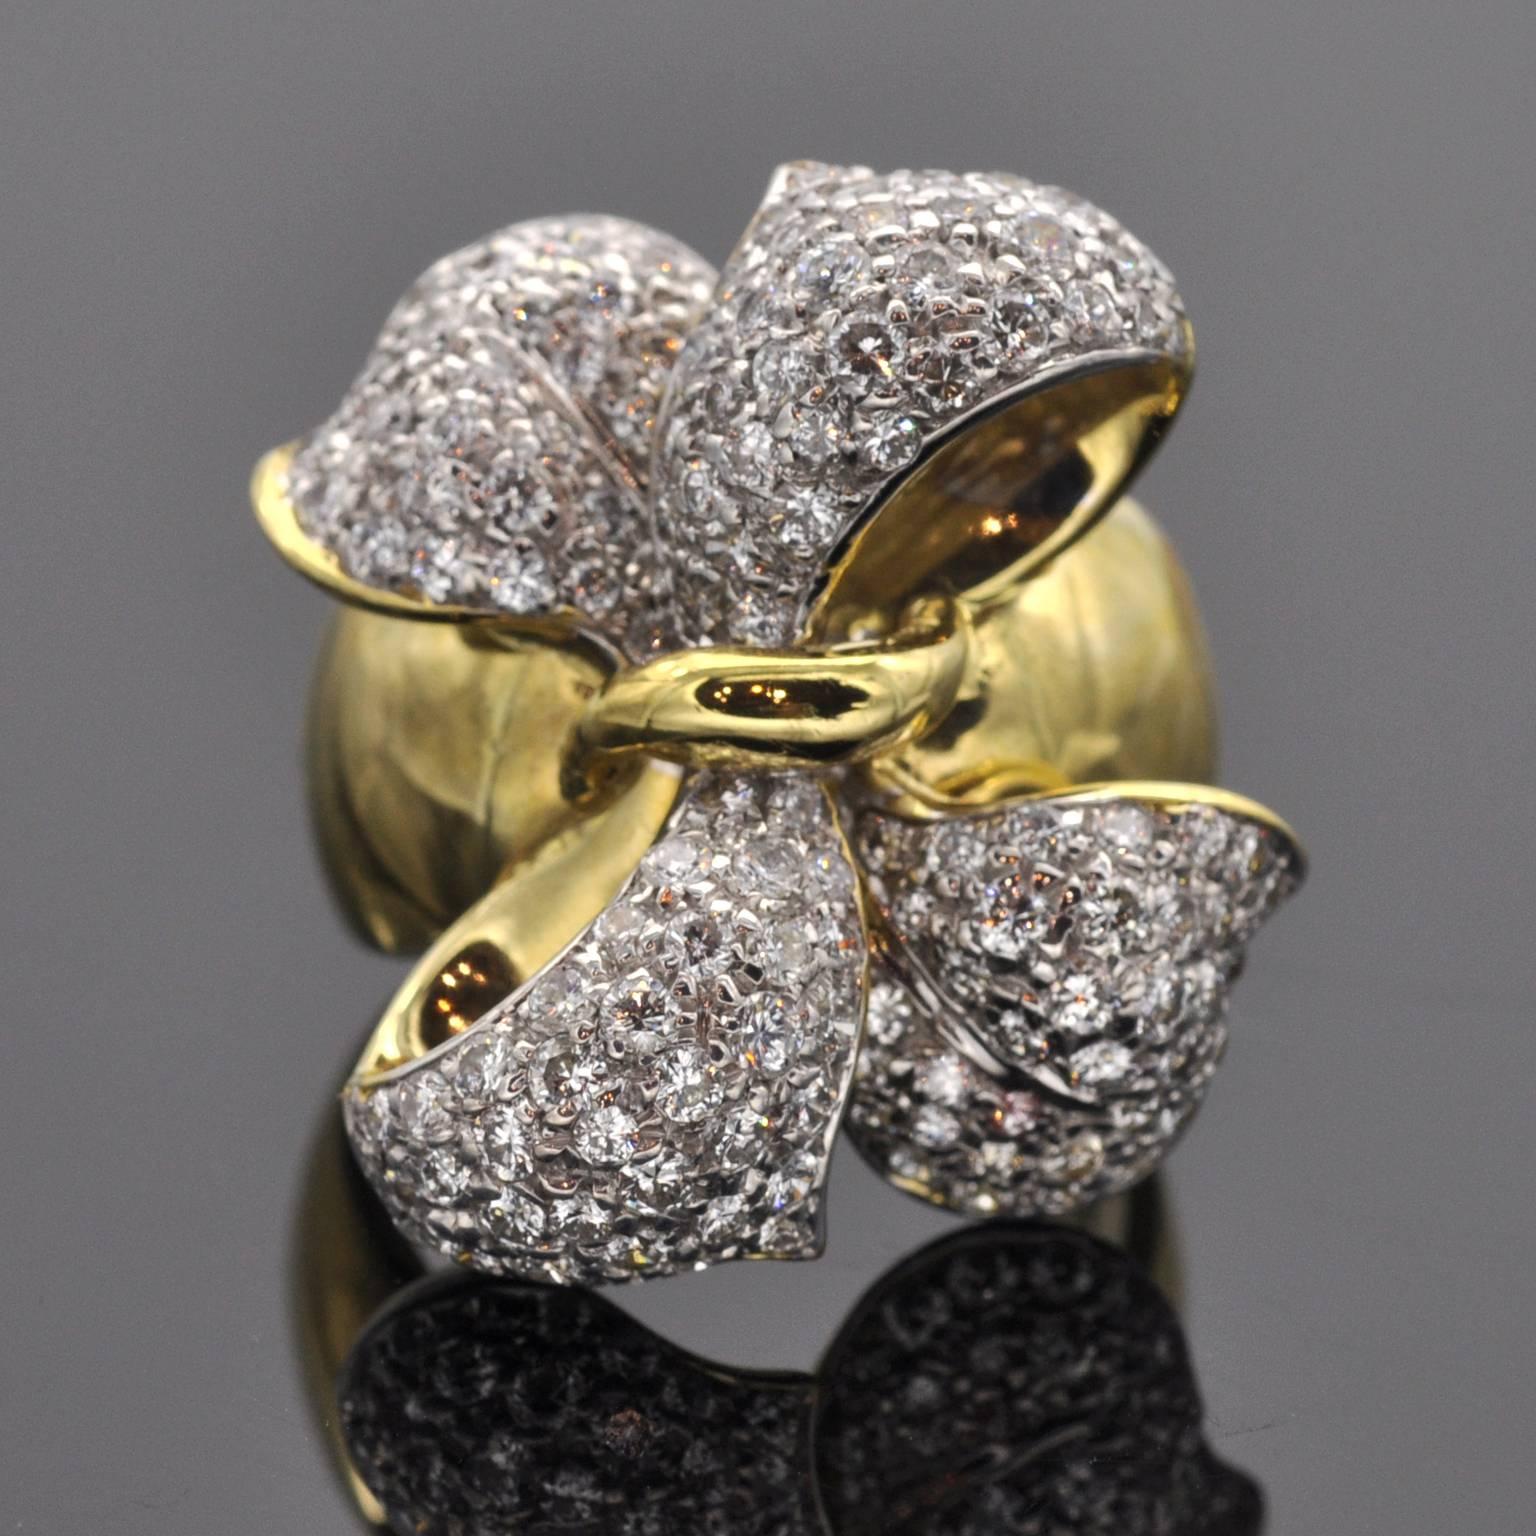 Ring  in Form einer eleganten Schleife, besetzt mit 1,85 Karat Diamanten.

Perfektes Set mit passenden Ohrringen Ref: LU47232880763

